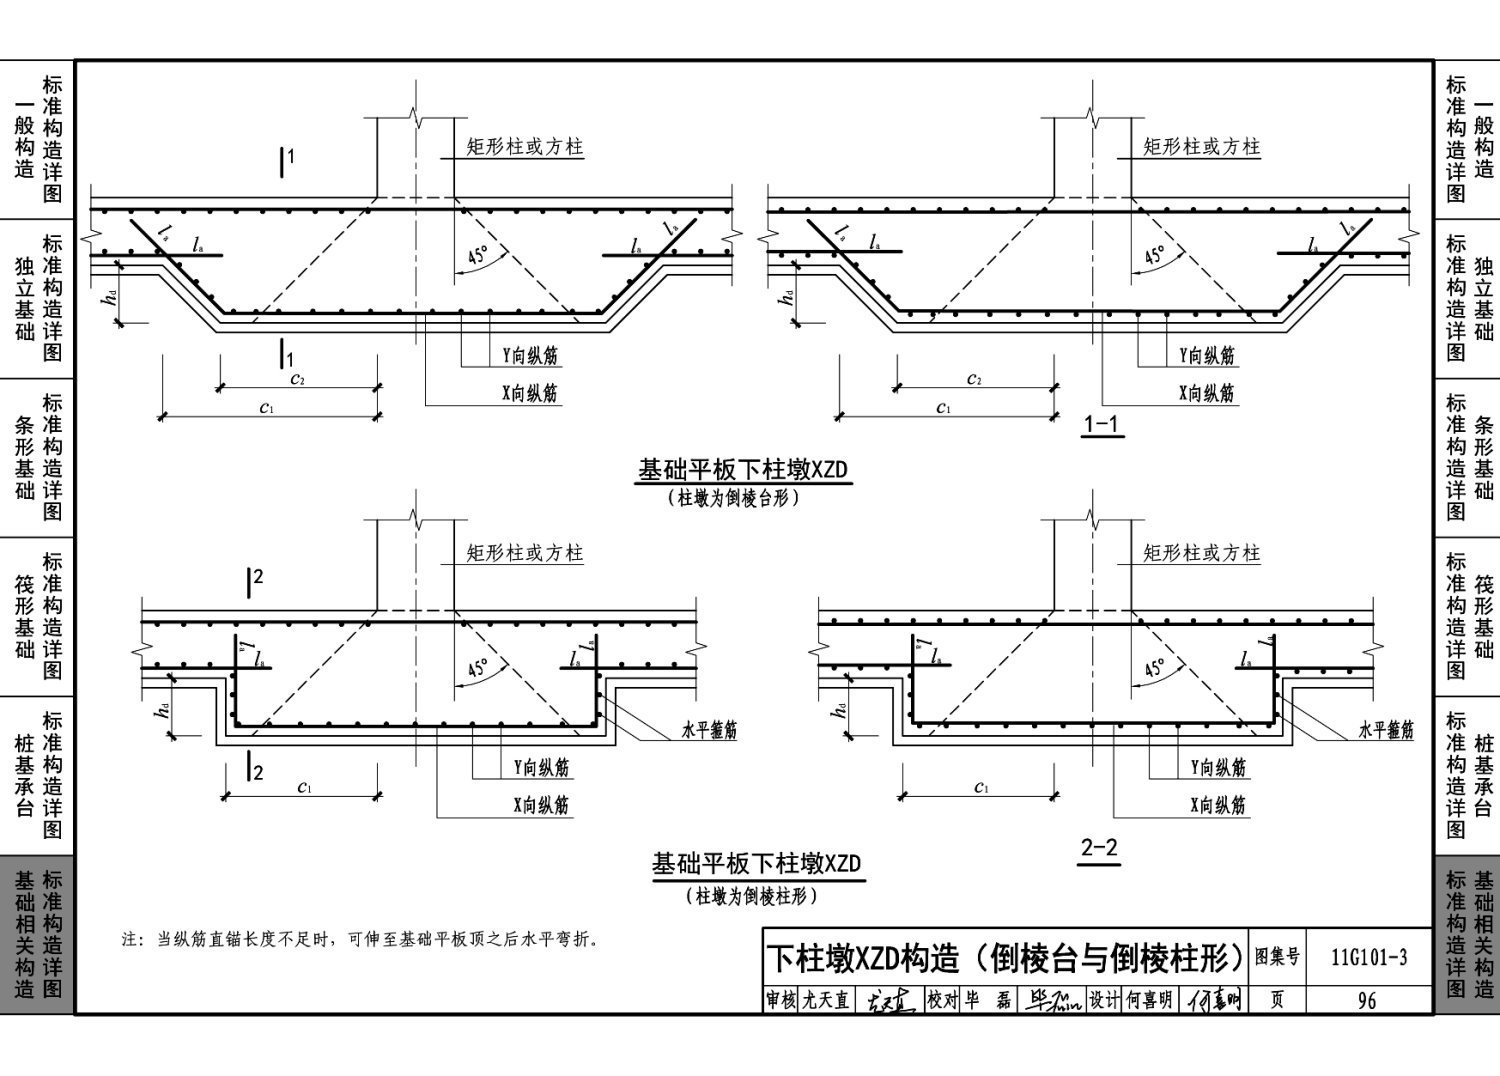 11g101-3:混凝土结构施工图平面整体表示方法制图规则